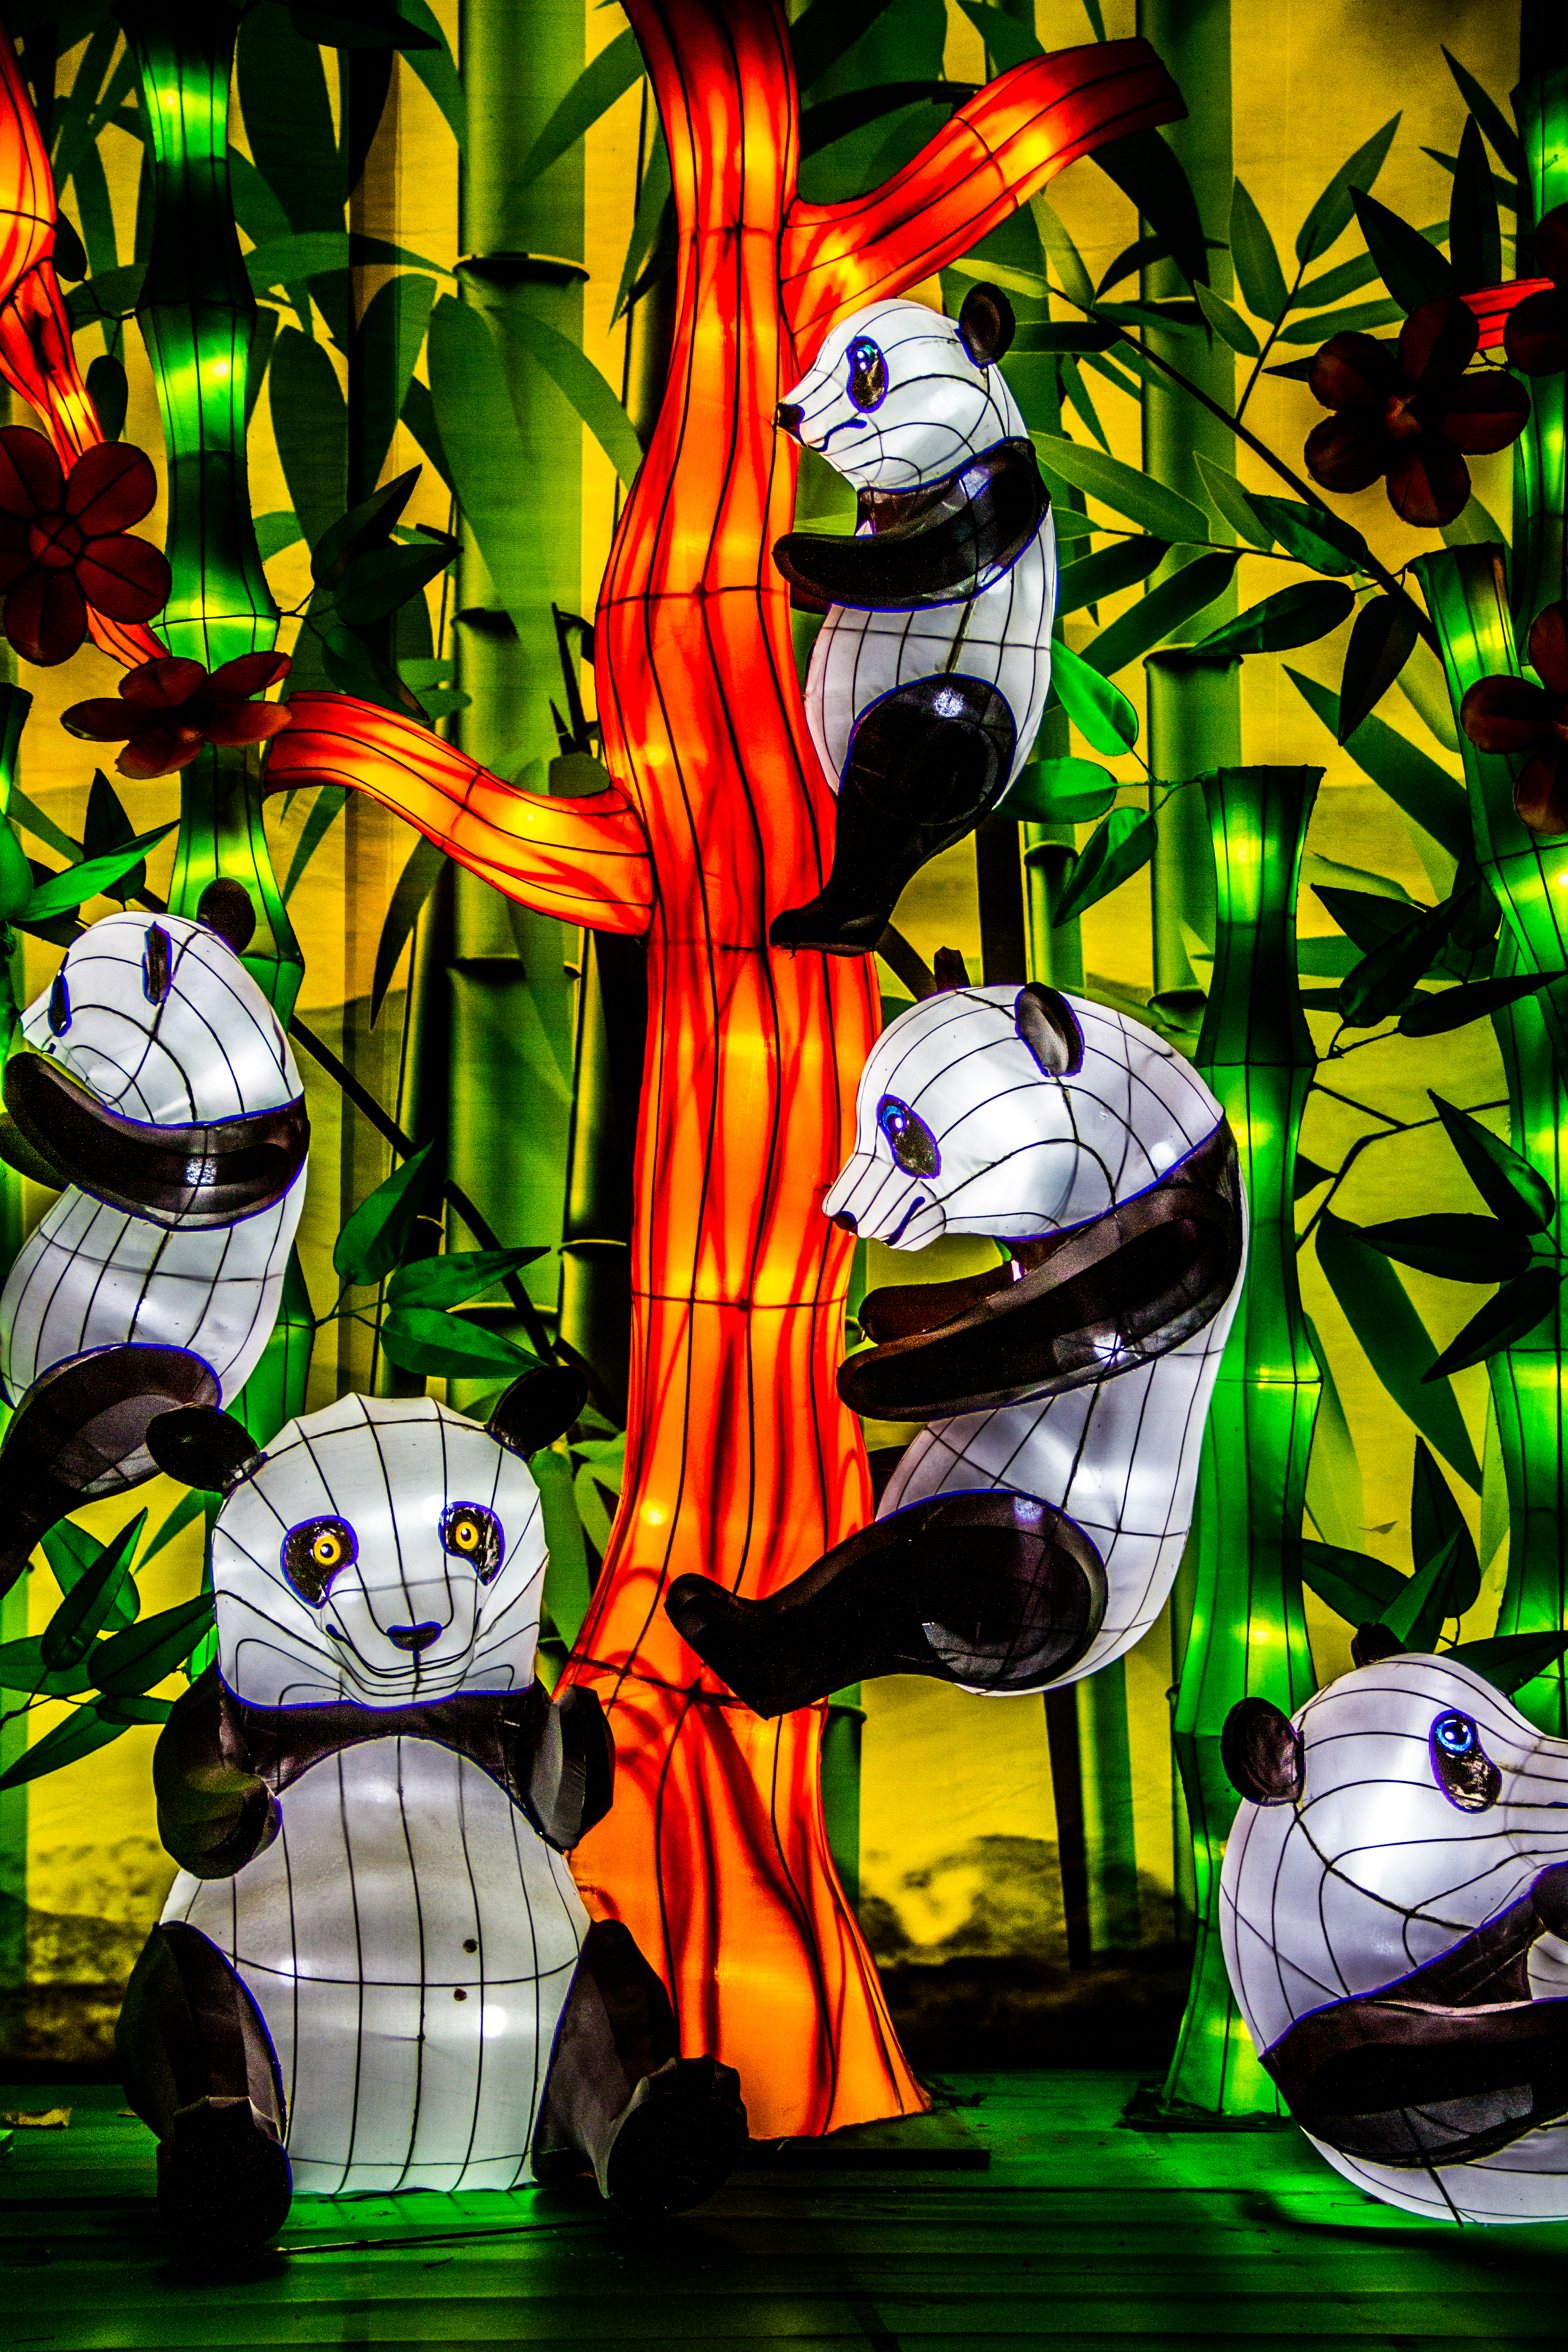 Panda display at Chinese Lantern Festival